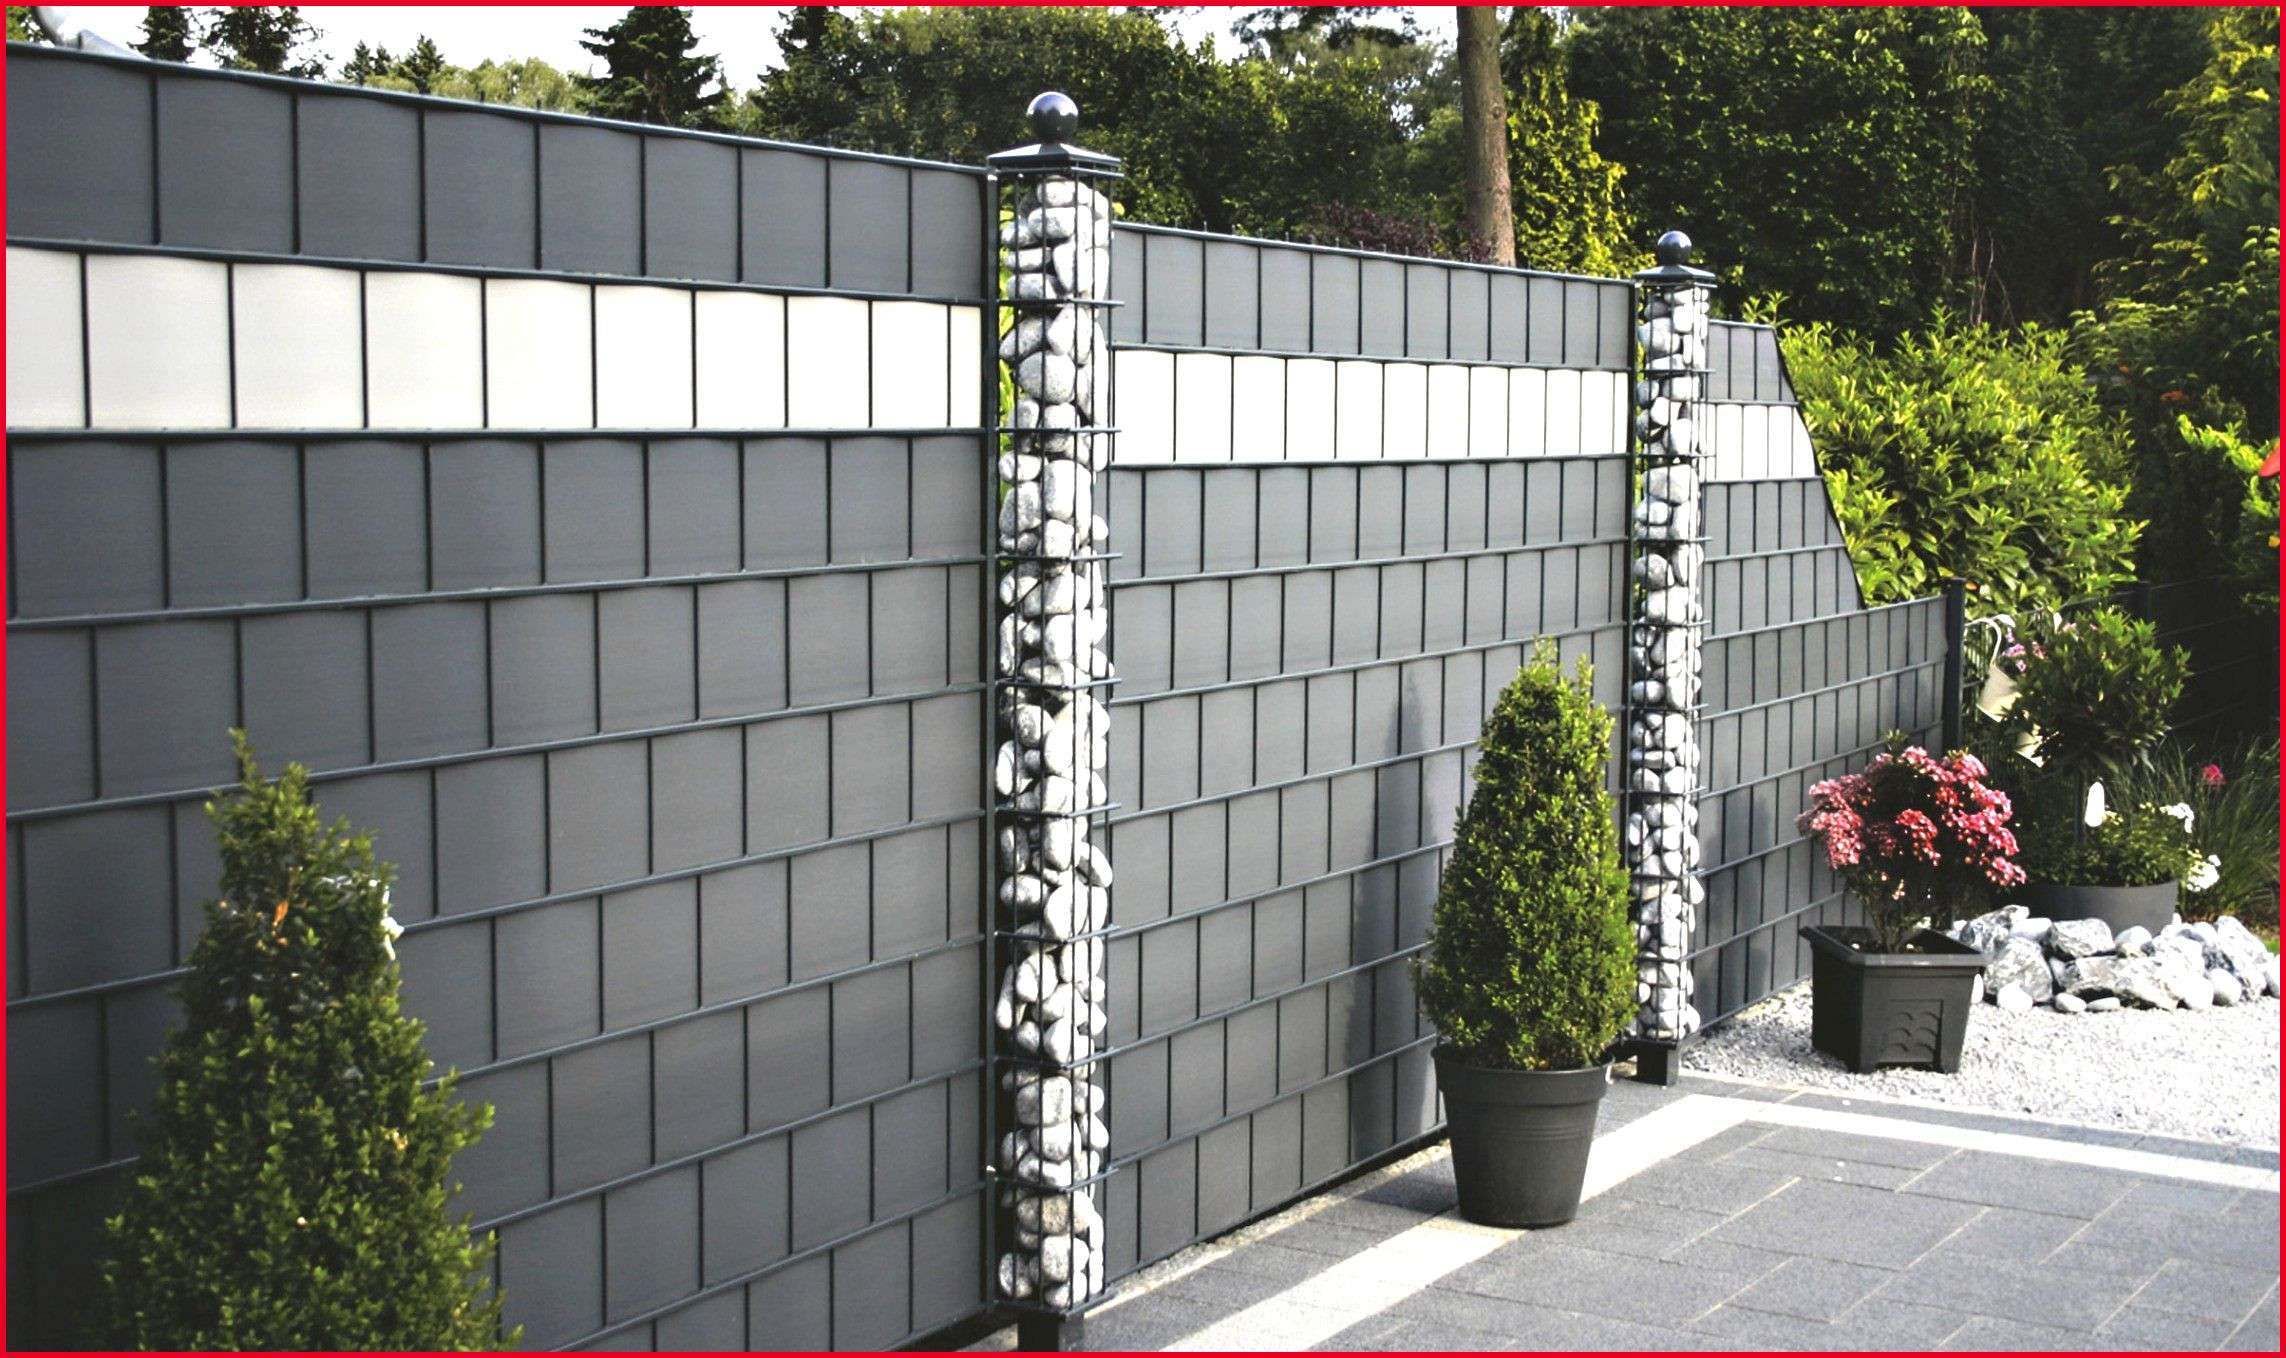 Steine Gartengestaltung Elegant Sichtschutz Stein Beste Zaun Mit Steinen Garten Ideas Zaun